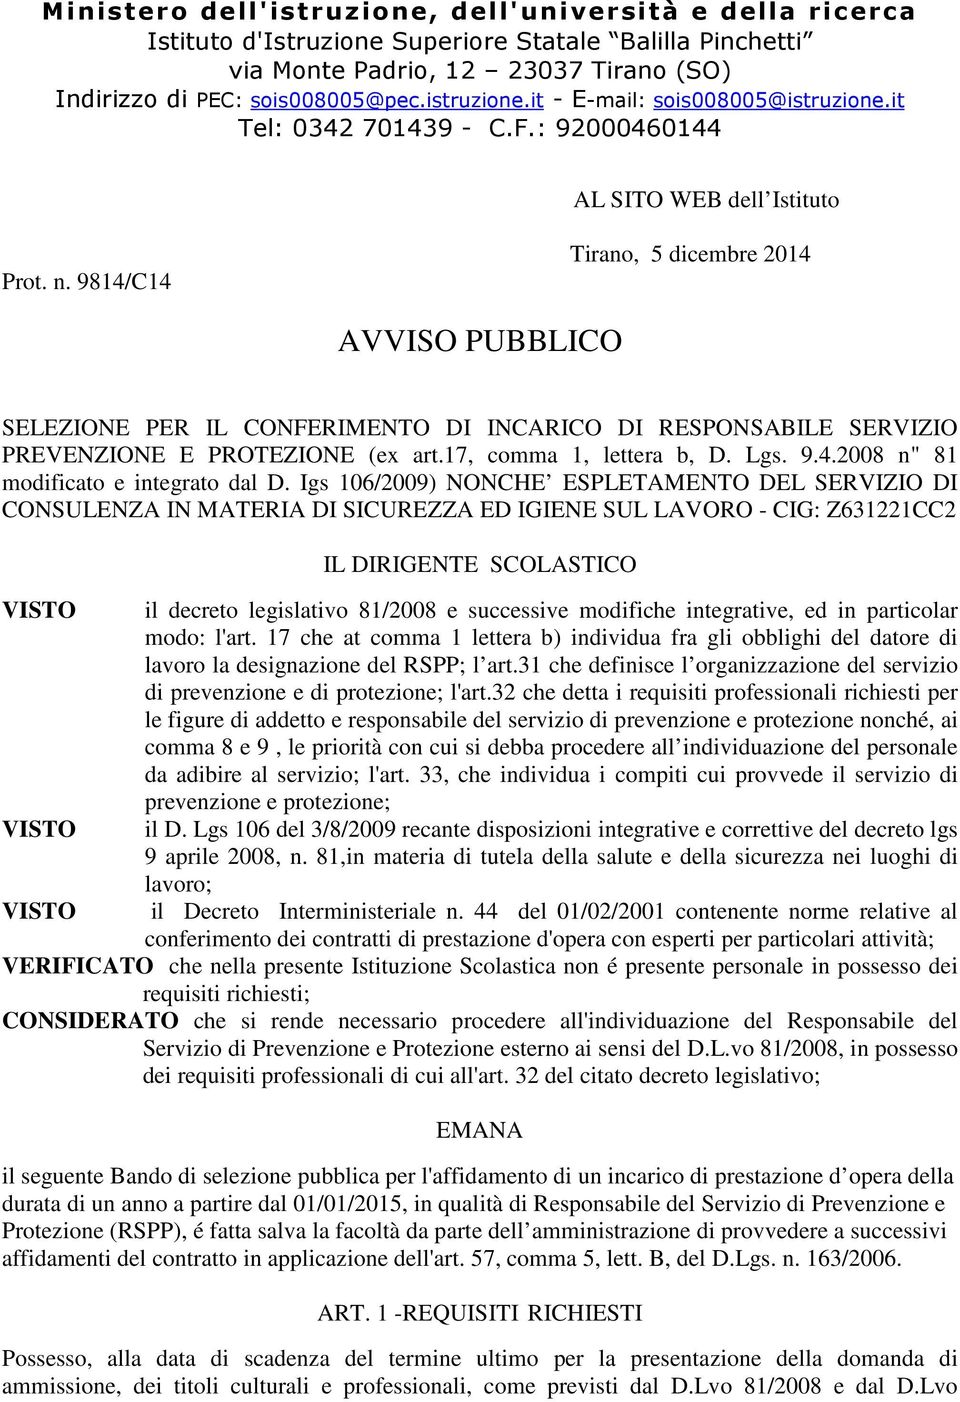 9814/C14 Tirano, 5 dicembre 2014 AVVISO PUBBLICO SELEZIONE PER IL CONFERIMENTO DI INCARICO DI RESPONSABILE SERVIZIO PREVENZIONE E PROTEZIONE (ex art.17, comma 1, lettera b, D. Lgs. 9.4.2008 n" 81 modificato e integrato dal D.